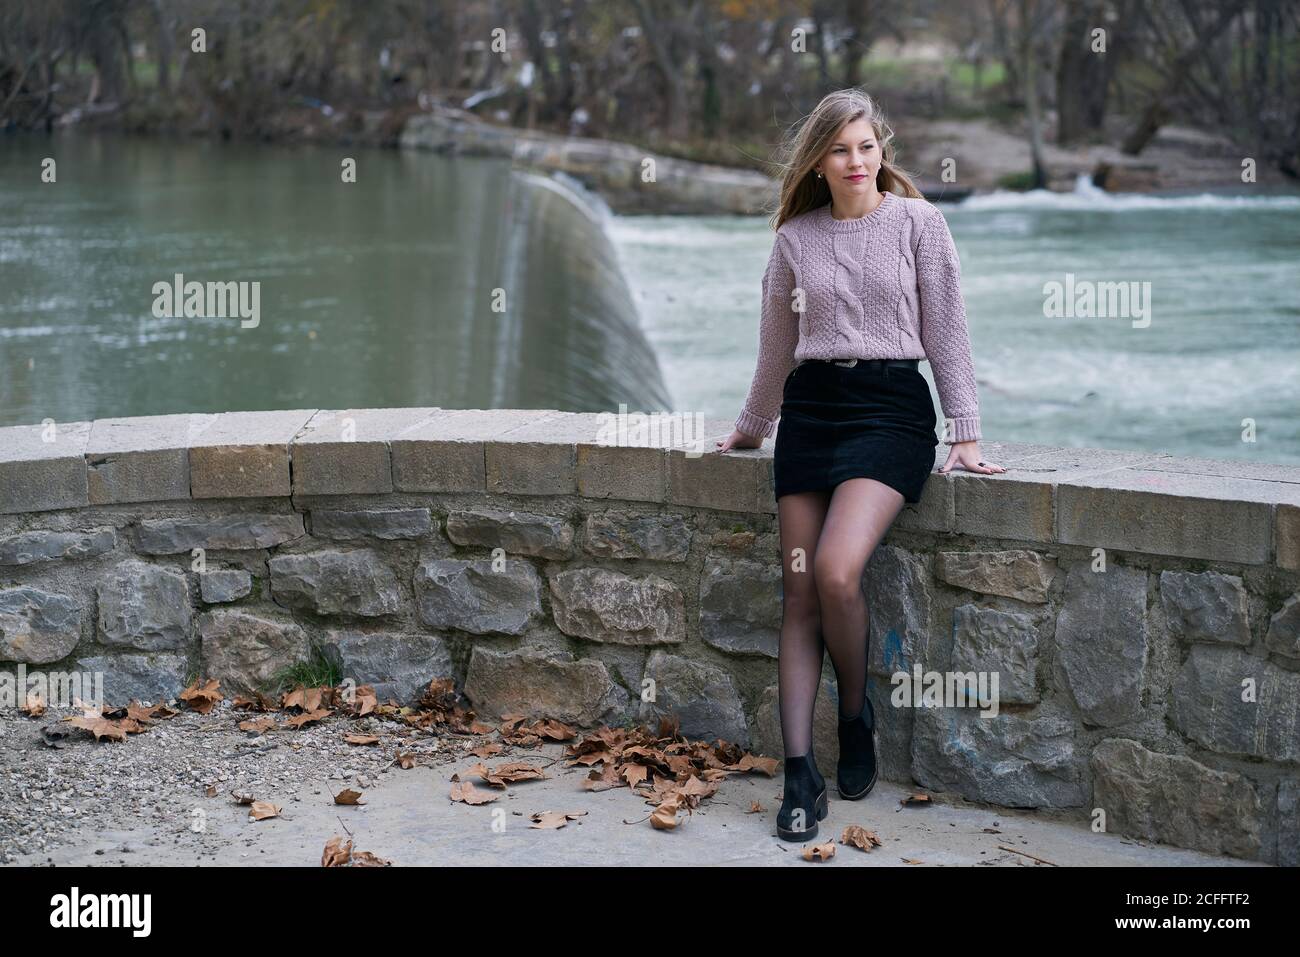 Mujer tranquila con suéter de punto y falda negra corta y apoyándose en una valla de piedra mientras caminaba cerca del río Fotografía de stock Alamy